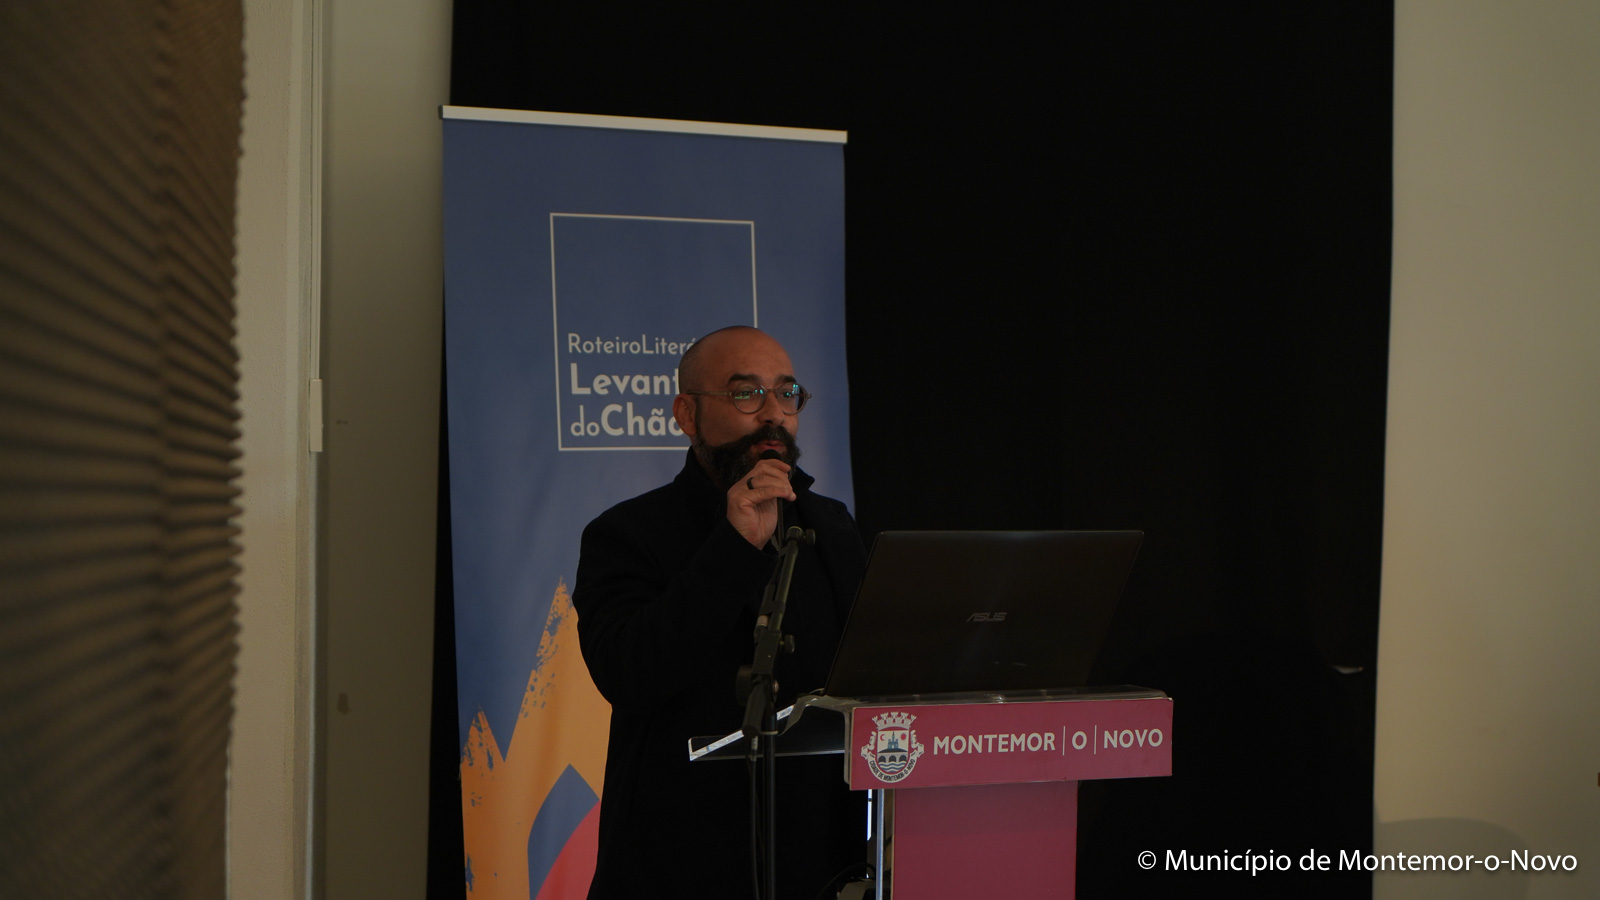 Sérgio Letria, Diretor da Fundação Saramago, abril 2021